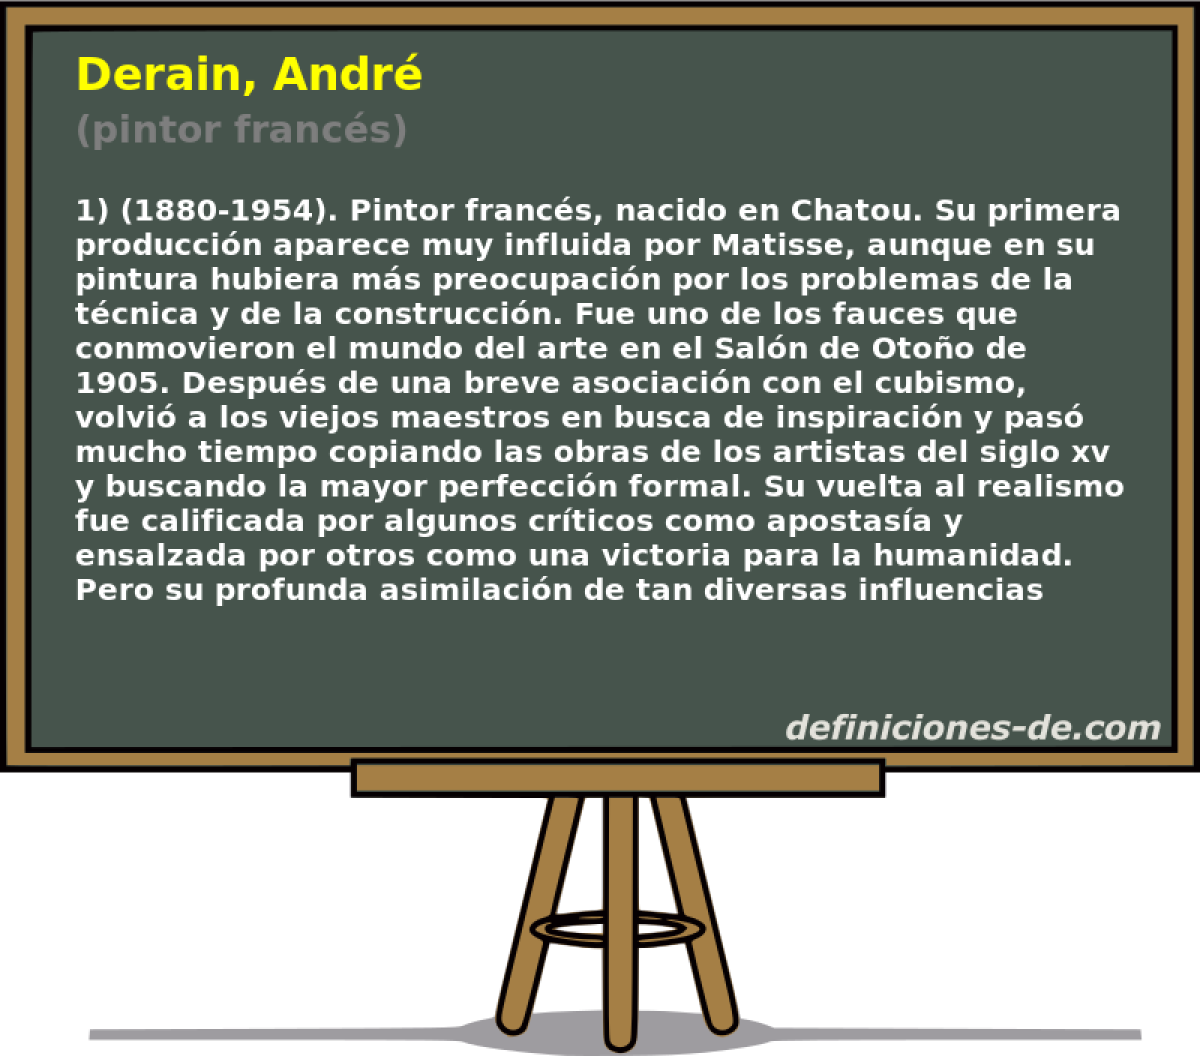 Derain, Andr (pintor francs)